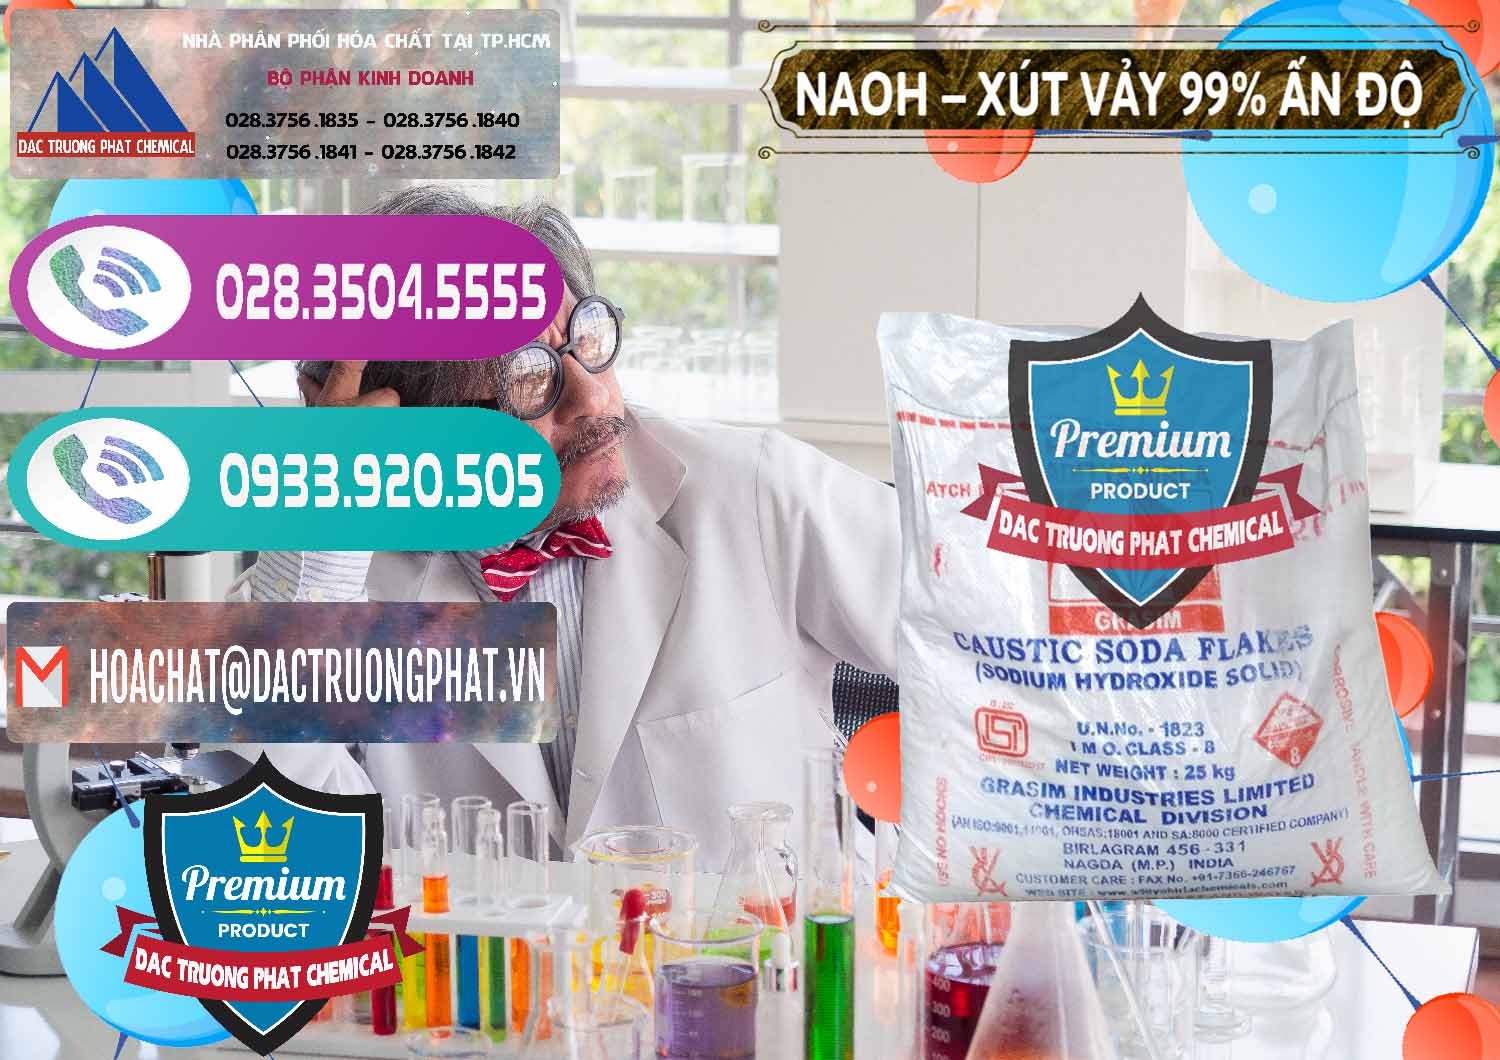 Công ty cung cấp ( bán ) Xút Vảy - NaOH Vảy 99% Aditya Birla Grasim Ấn Độ India - 0171 - Cty chuyên nhập khẩu _ cung cấp hóa chất tại TP.HCM - hoachatxulynuoc.com